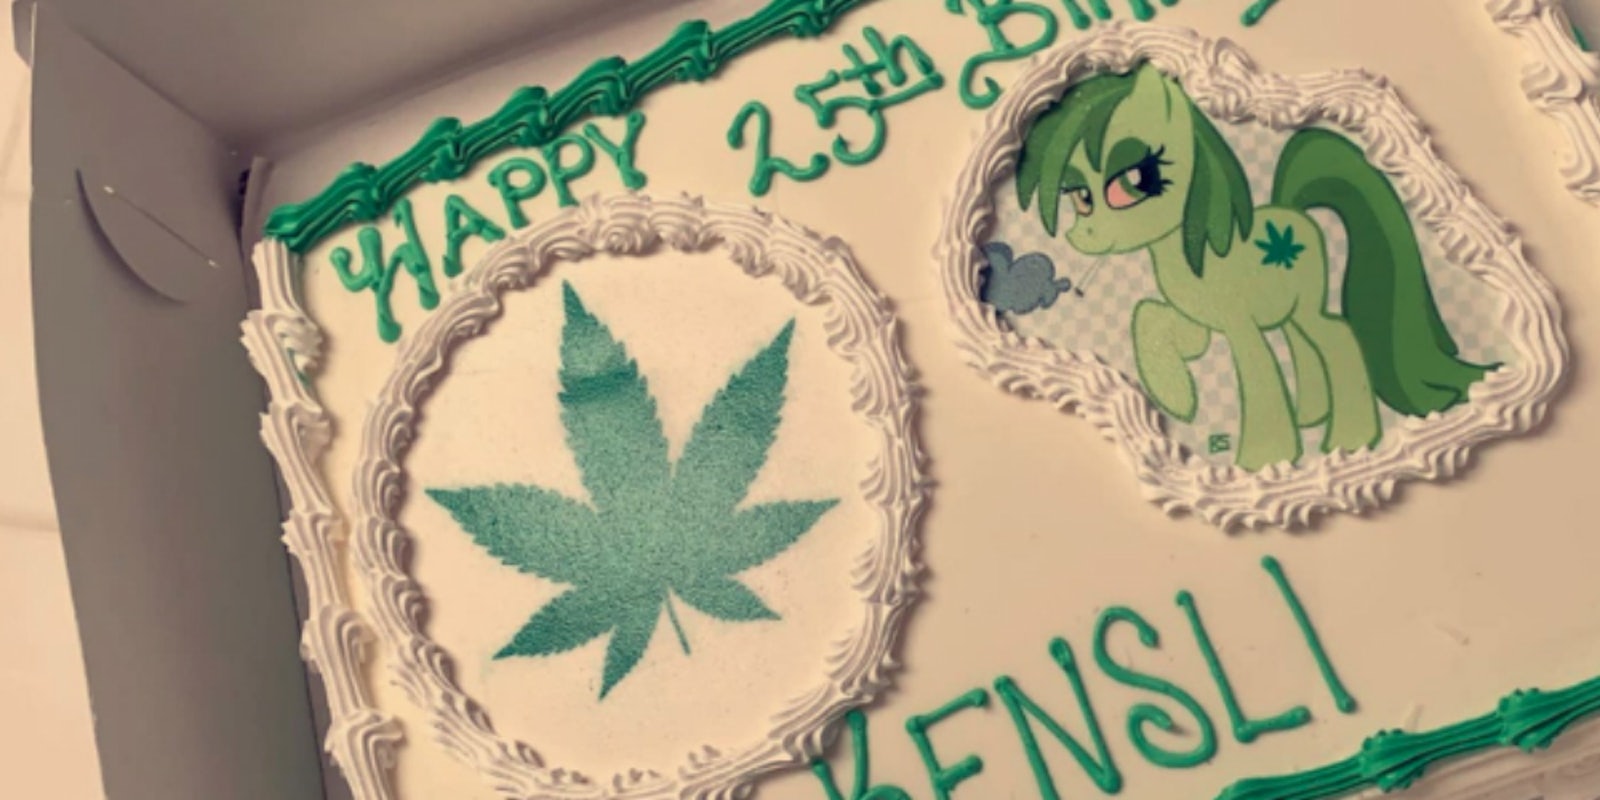 marijuana-moana-cake